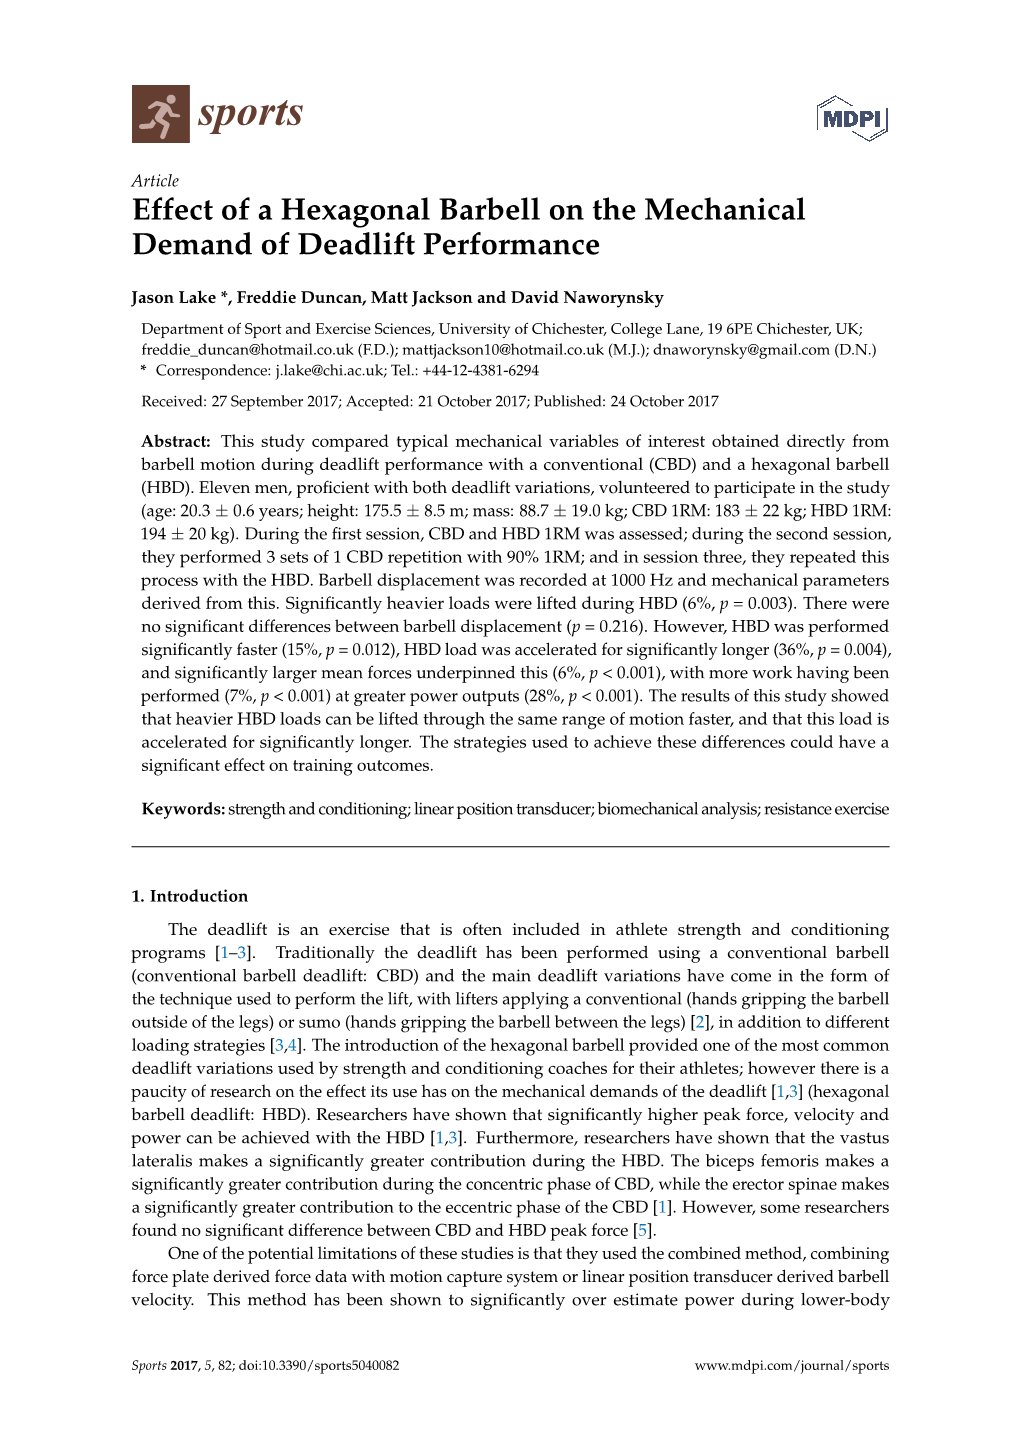 Effect of a Hexagonal Barbell on the Mechanical Demand of Deadlift Performance